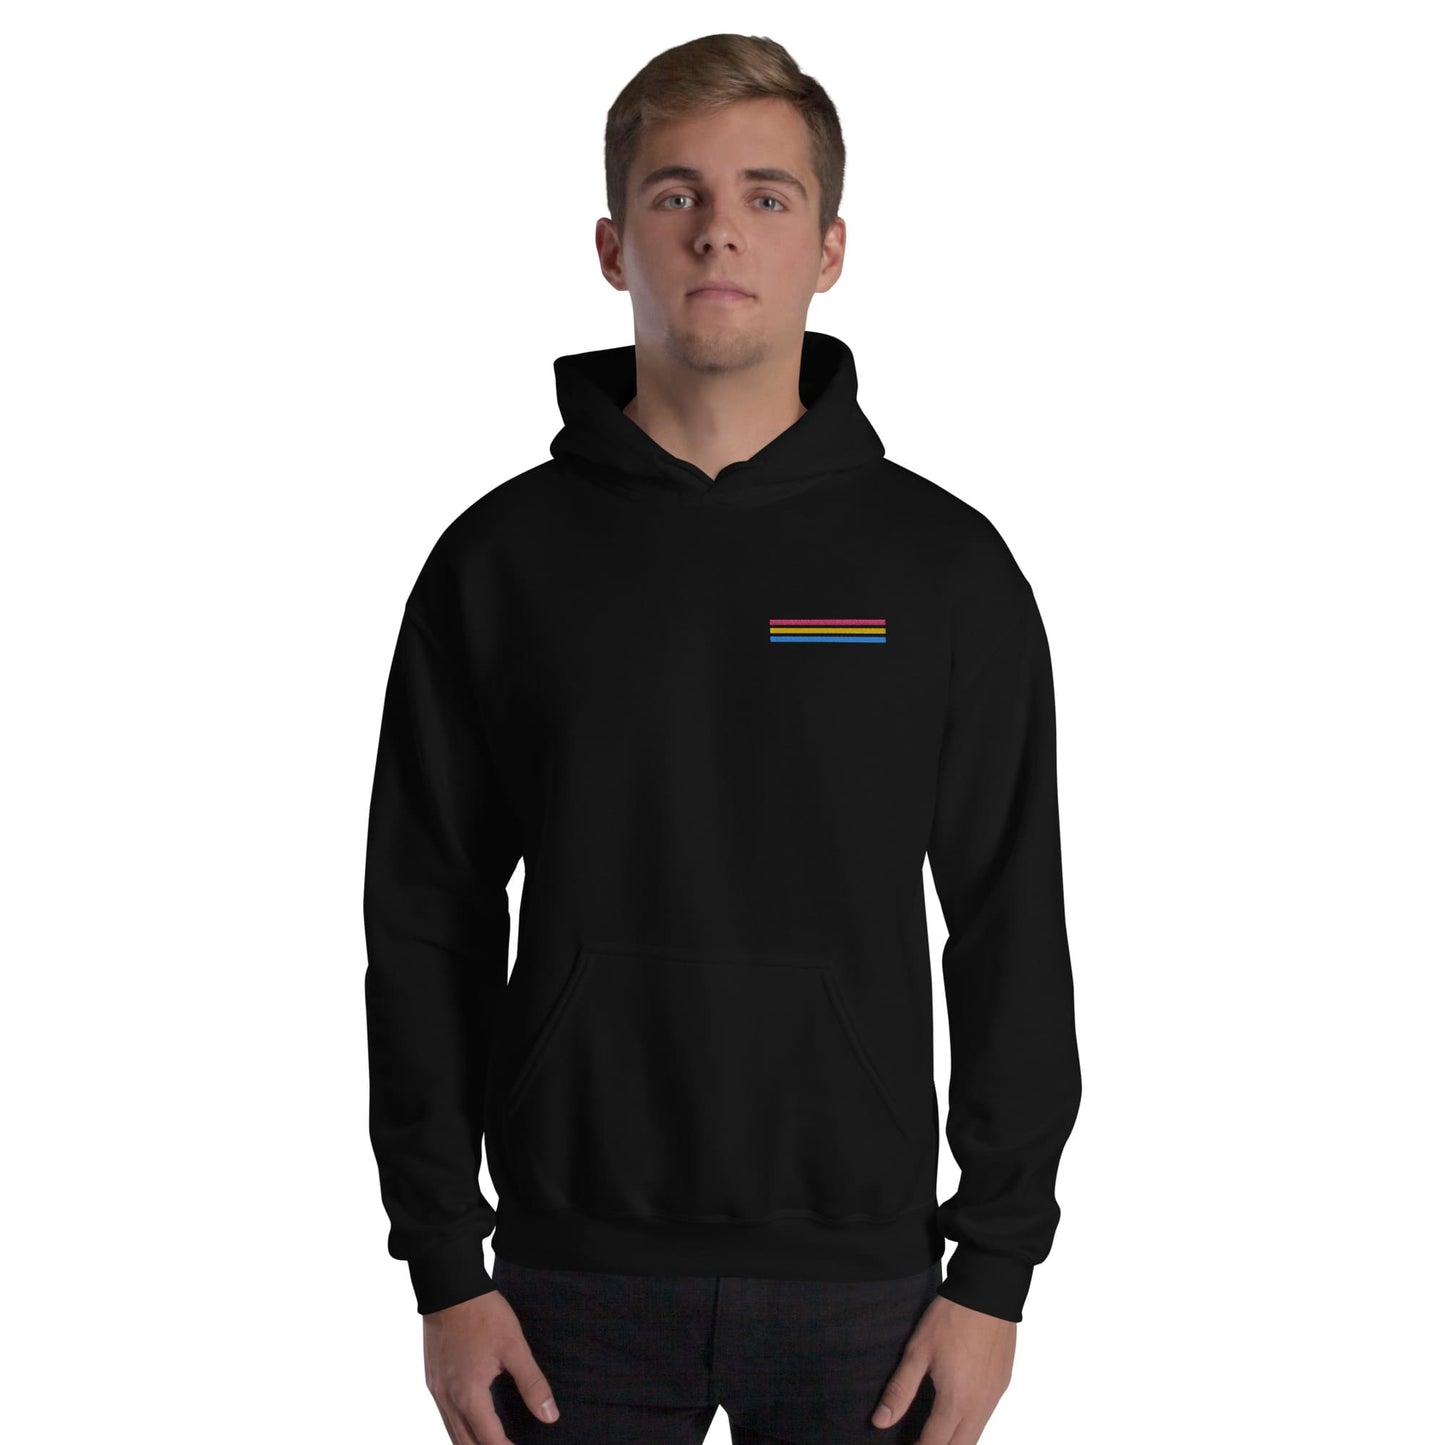 pansexual hoodie, subtle pan pride flag embroidered pocket design hooded sweatshirt, model 2